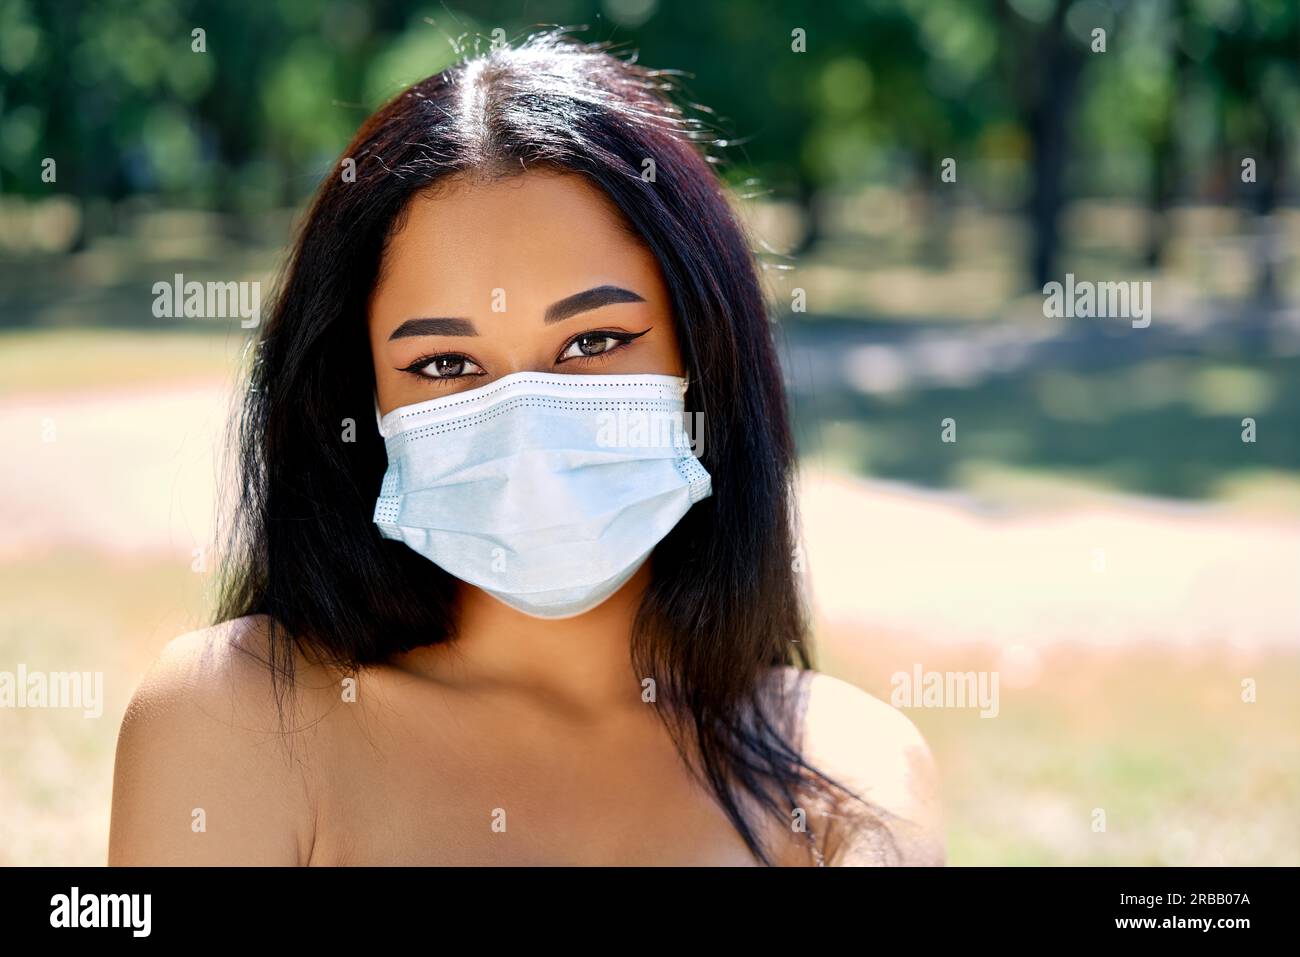 Gros plan de la femme afro-américaine dans le masque de protection contre le virus. Coronavirus COVID-19 pandémie de maladie, concept de santé Banque D'Images